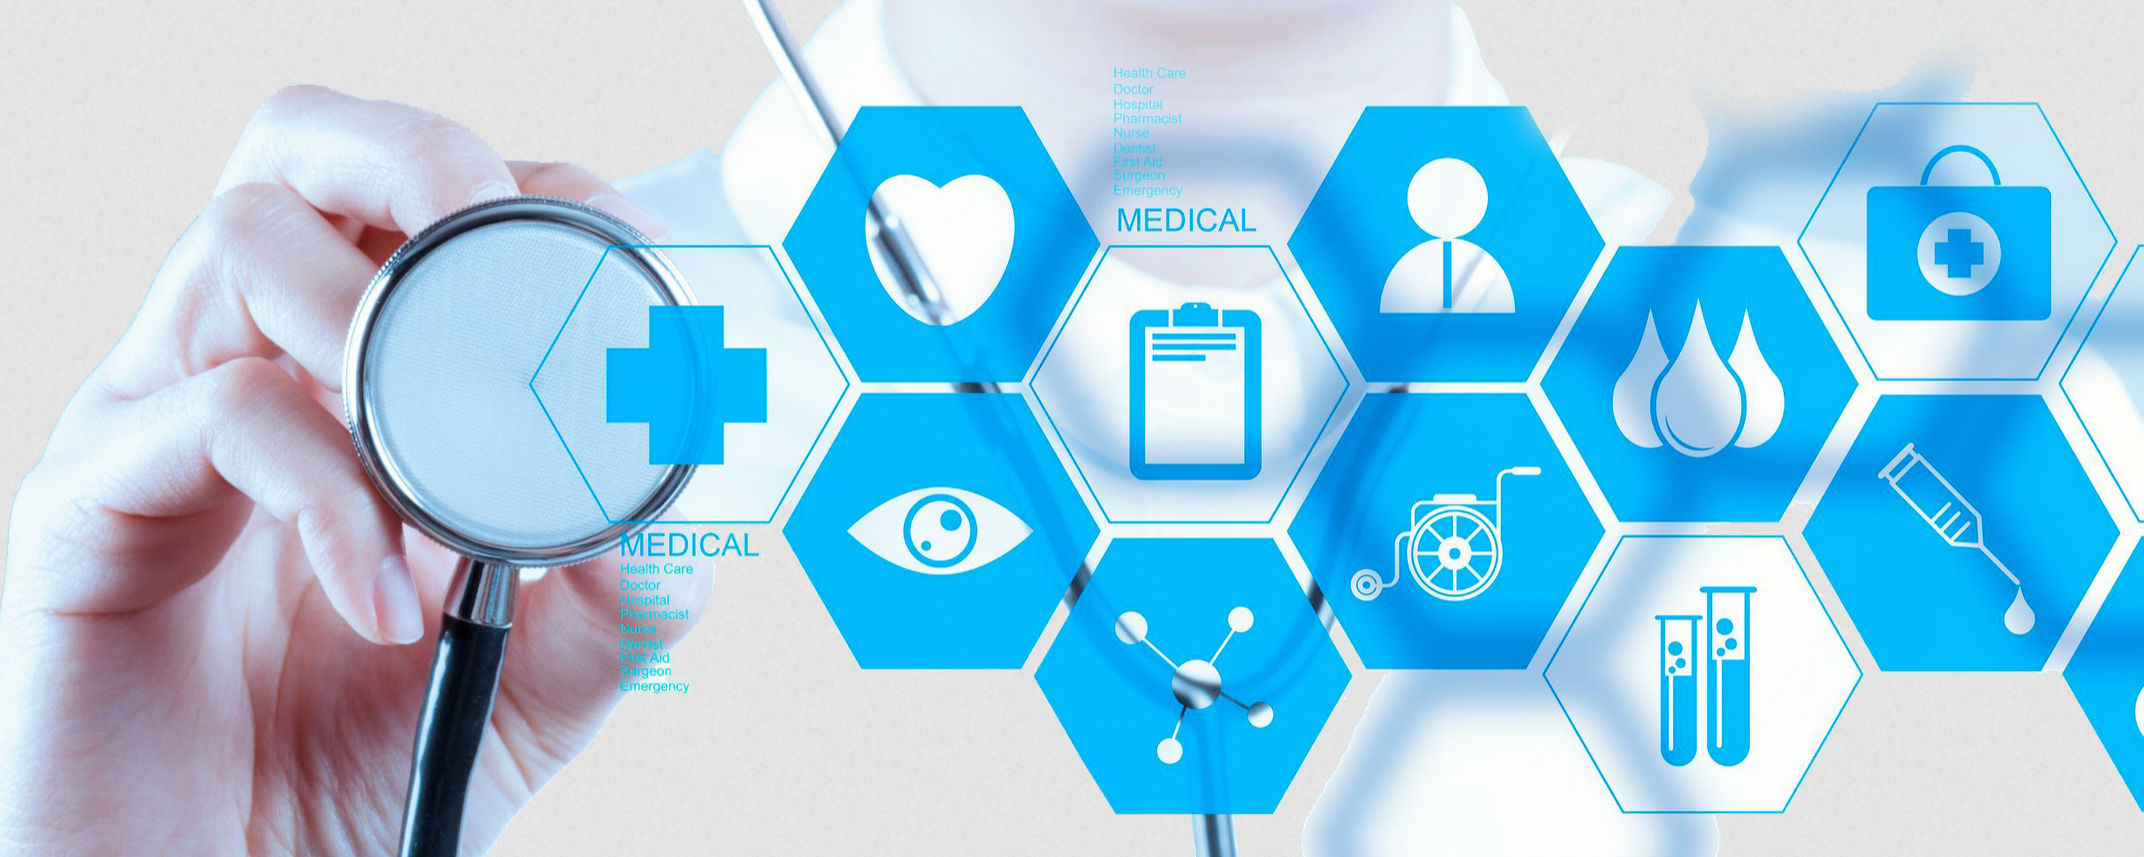 sistema para médicos,software médico,sistema para clínicas - 5 Mejores Software Médicos: Gestión Eficiente de Clínicas y Consultorios - Medicina General